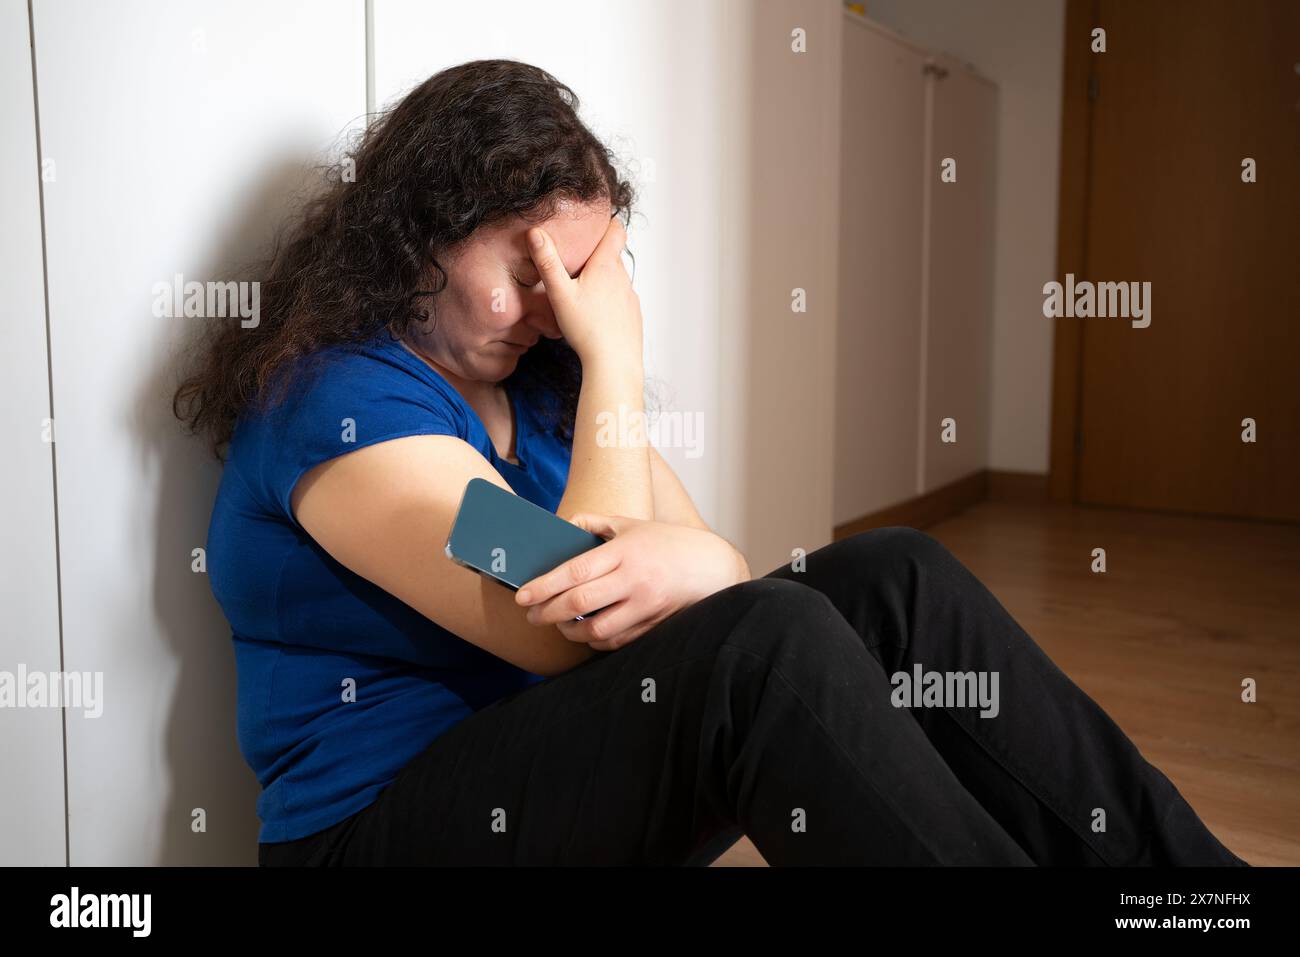 Una donna triste che regge un telefono cellulare lamentandosi seduto sul pavimento di casa con una luce scura sullo sfondo Foto Stock